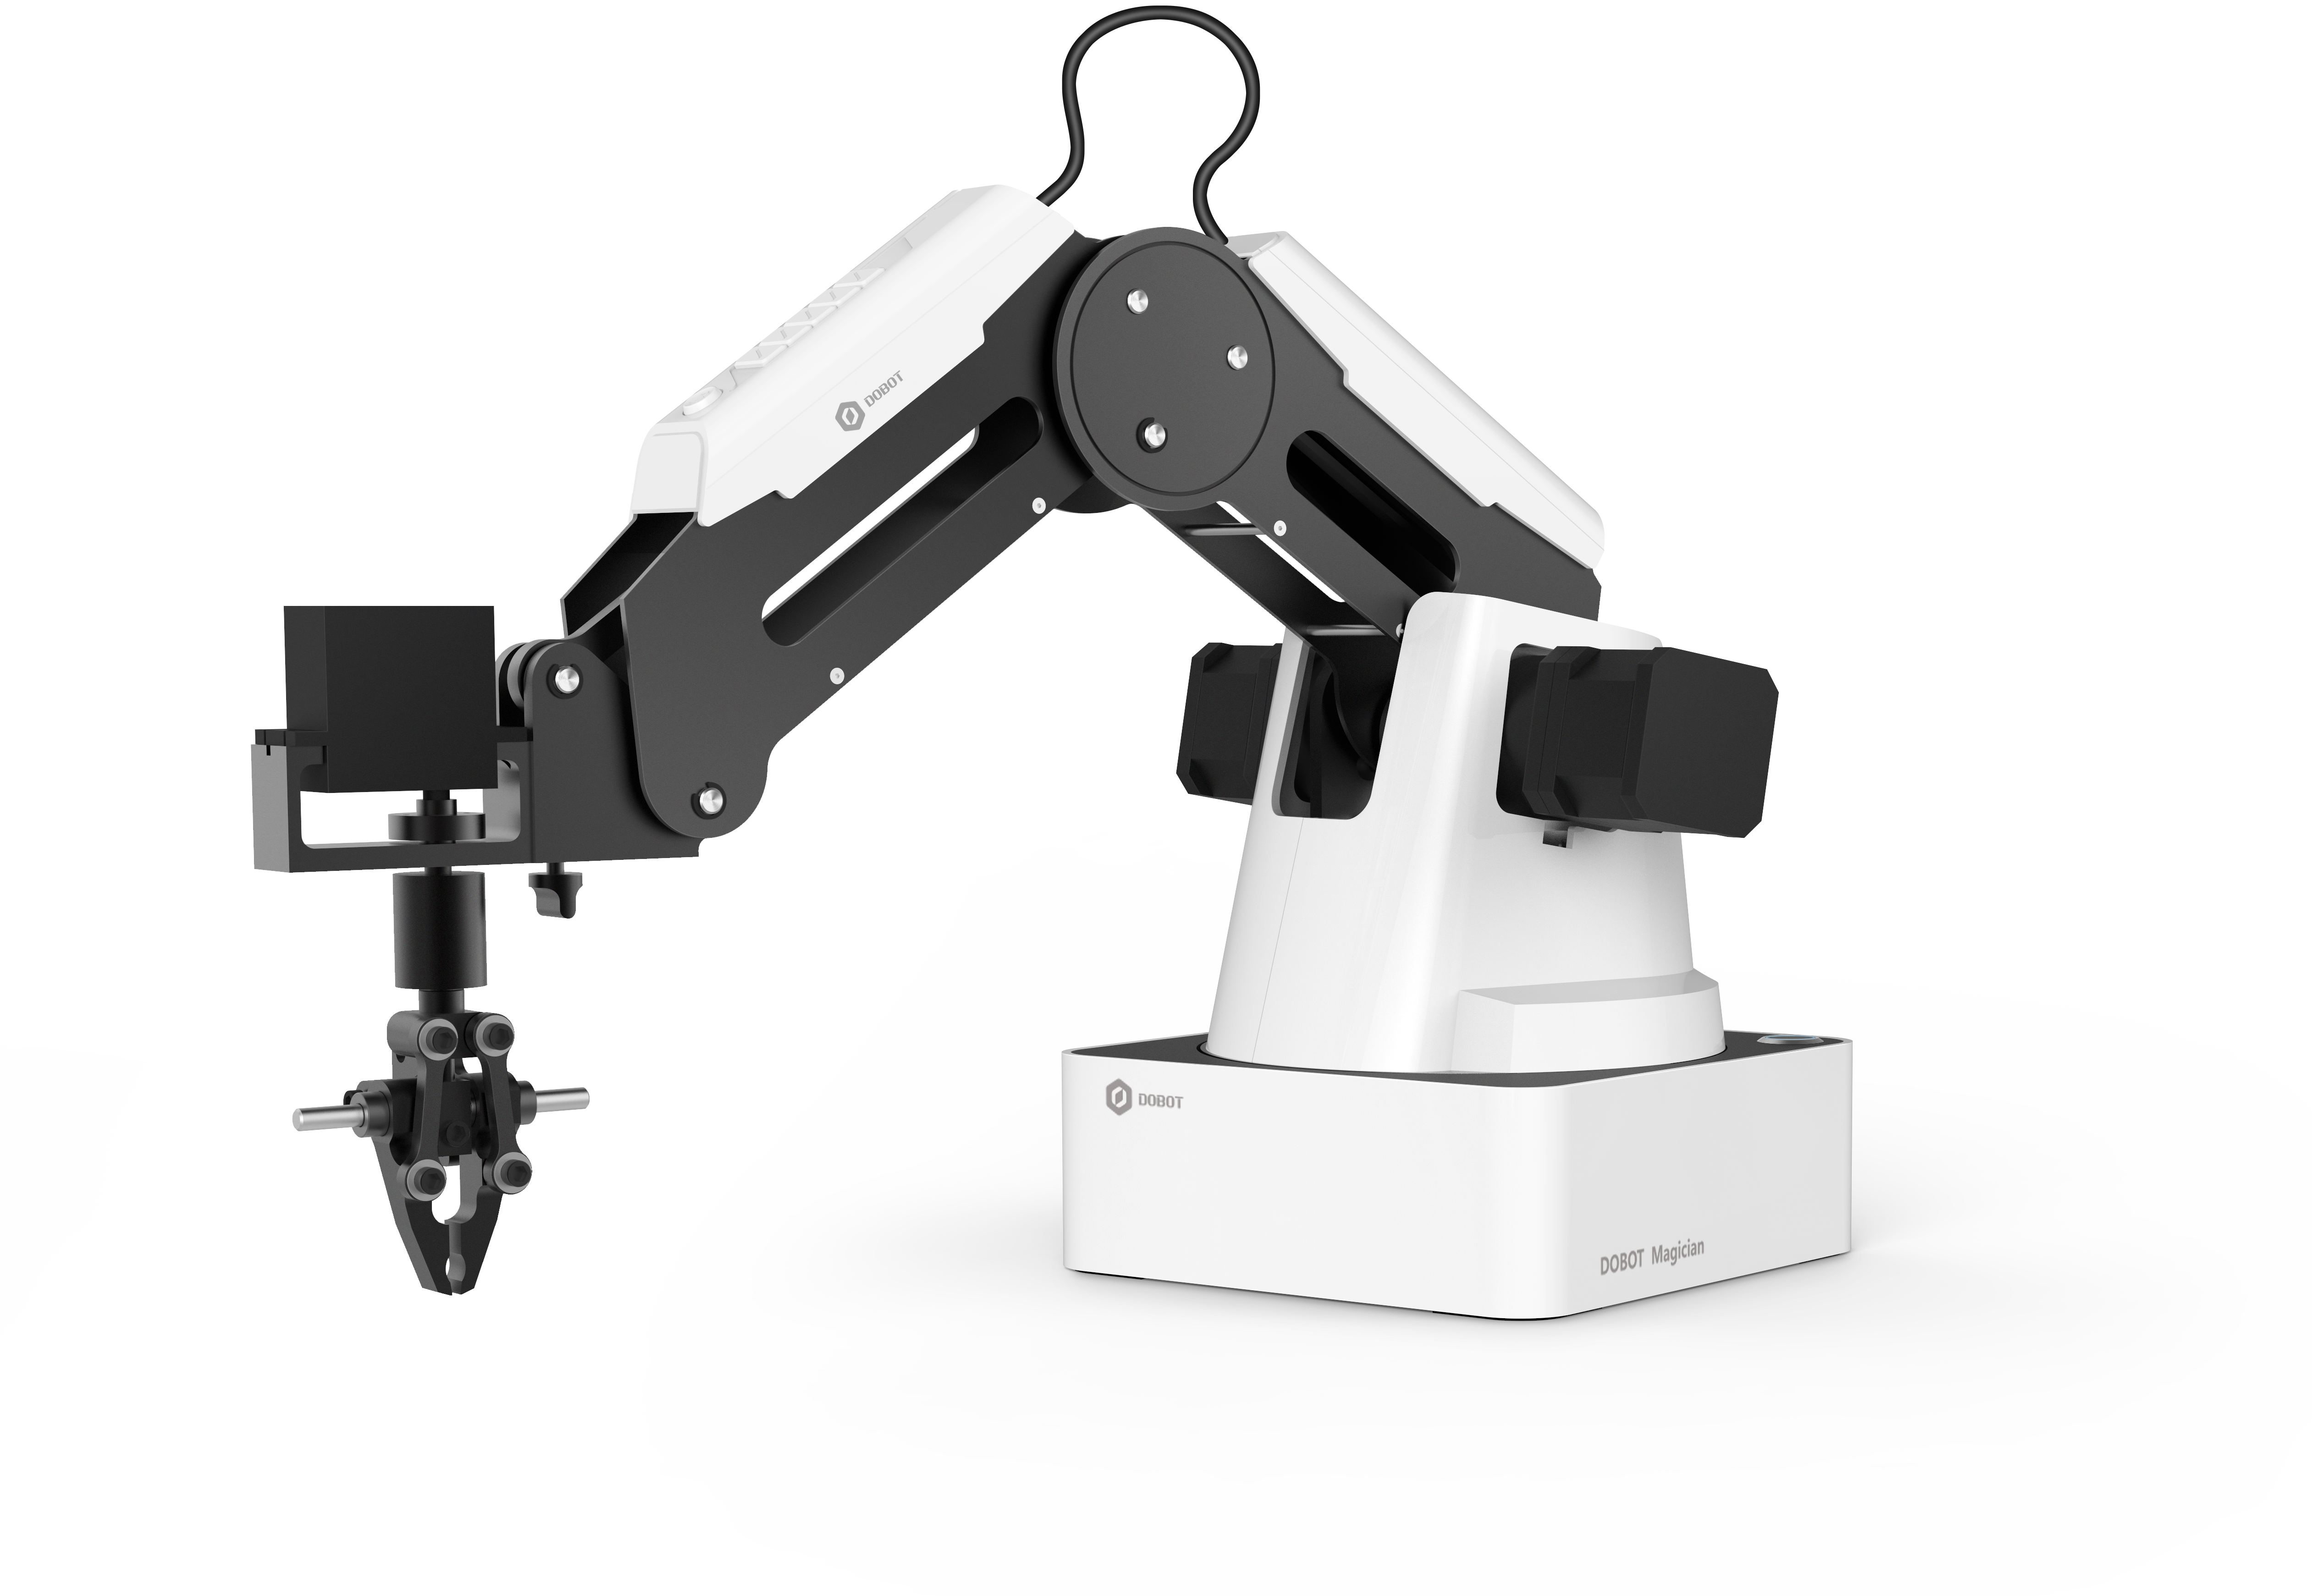 RobotLAB Dobot Robotic Arm-1-1.png